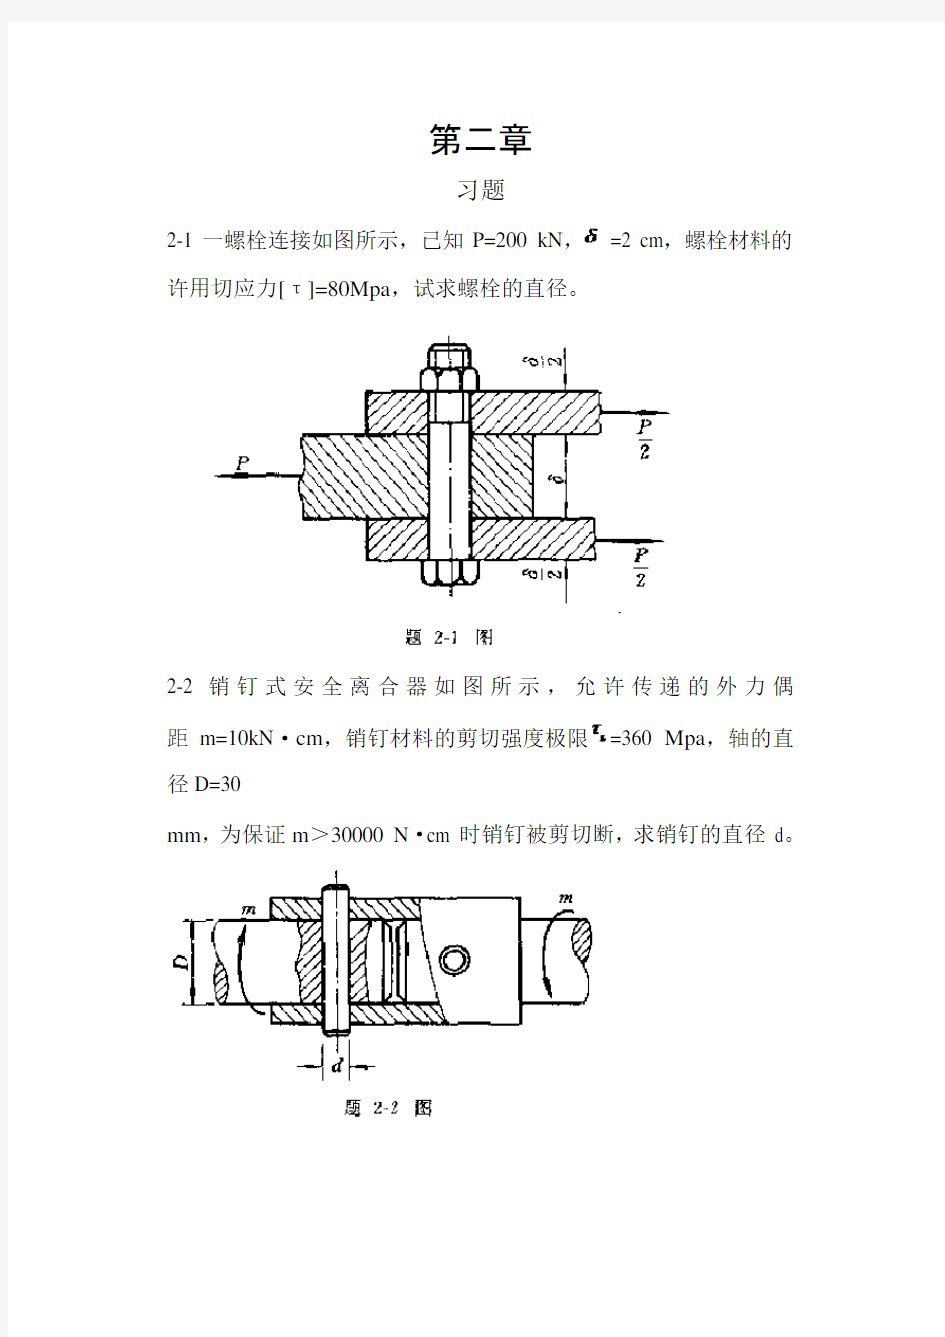 工程力学材料力学(北京科大、东北大学版)第4版习题答案第二到九节